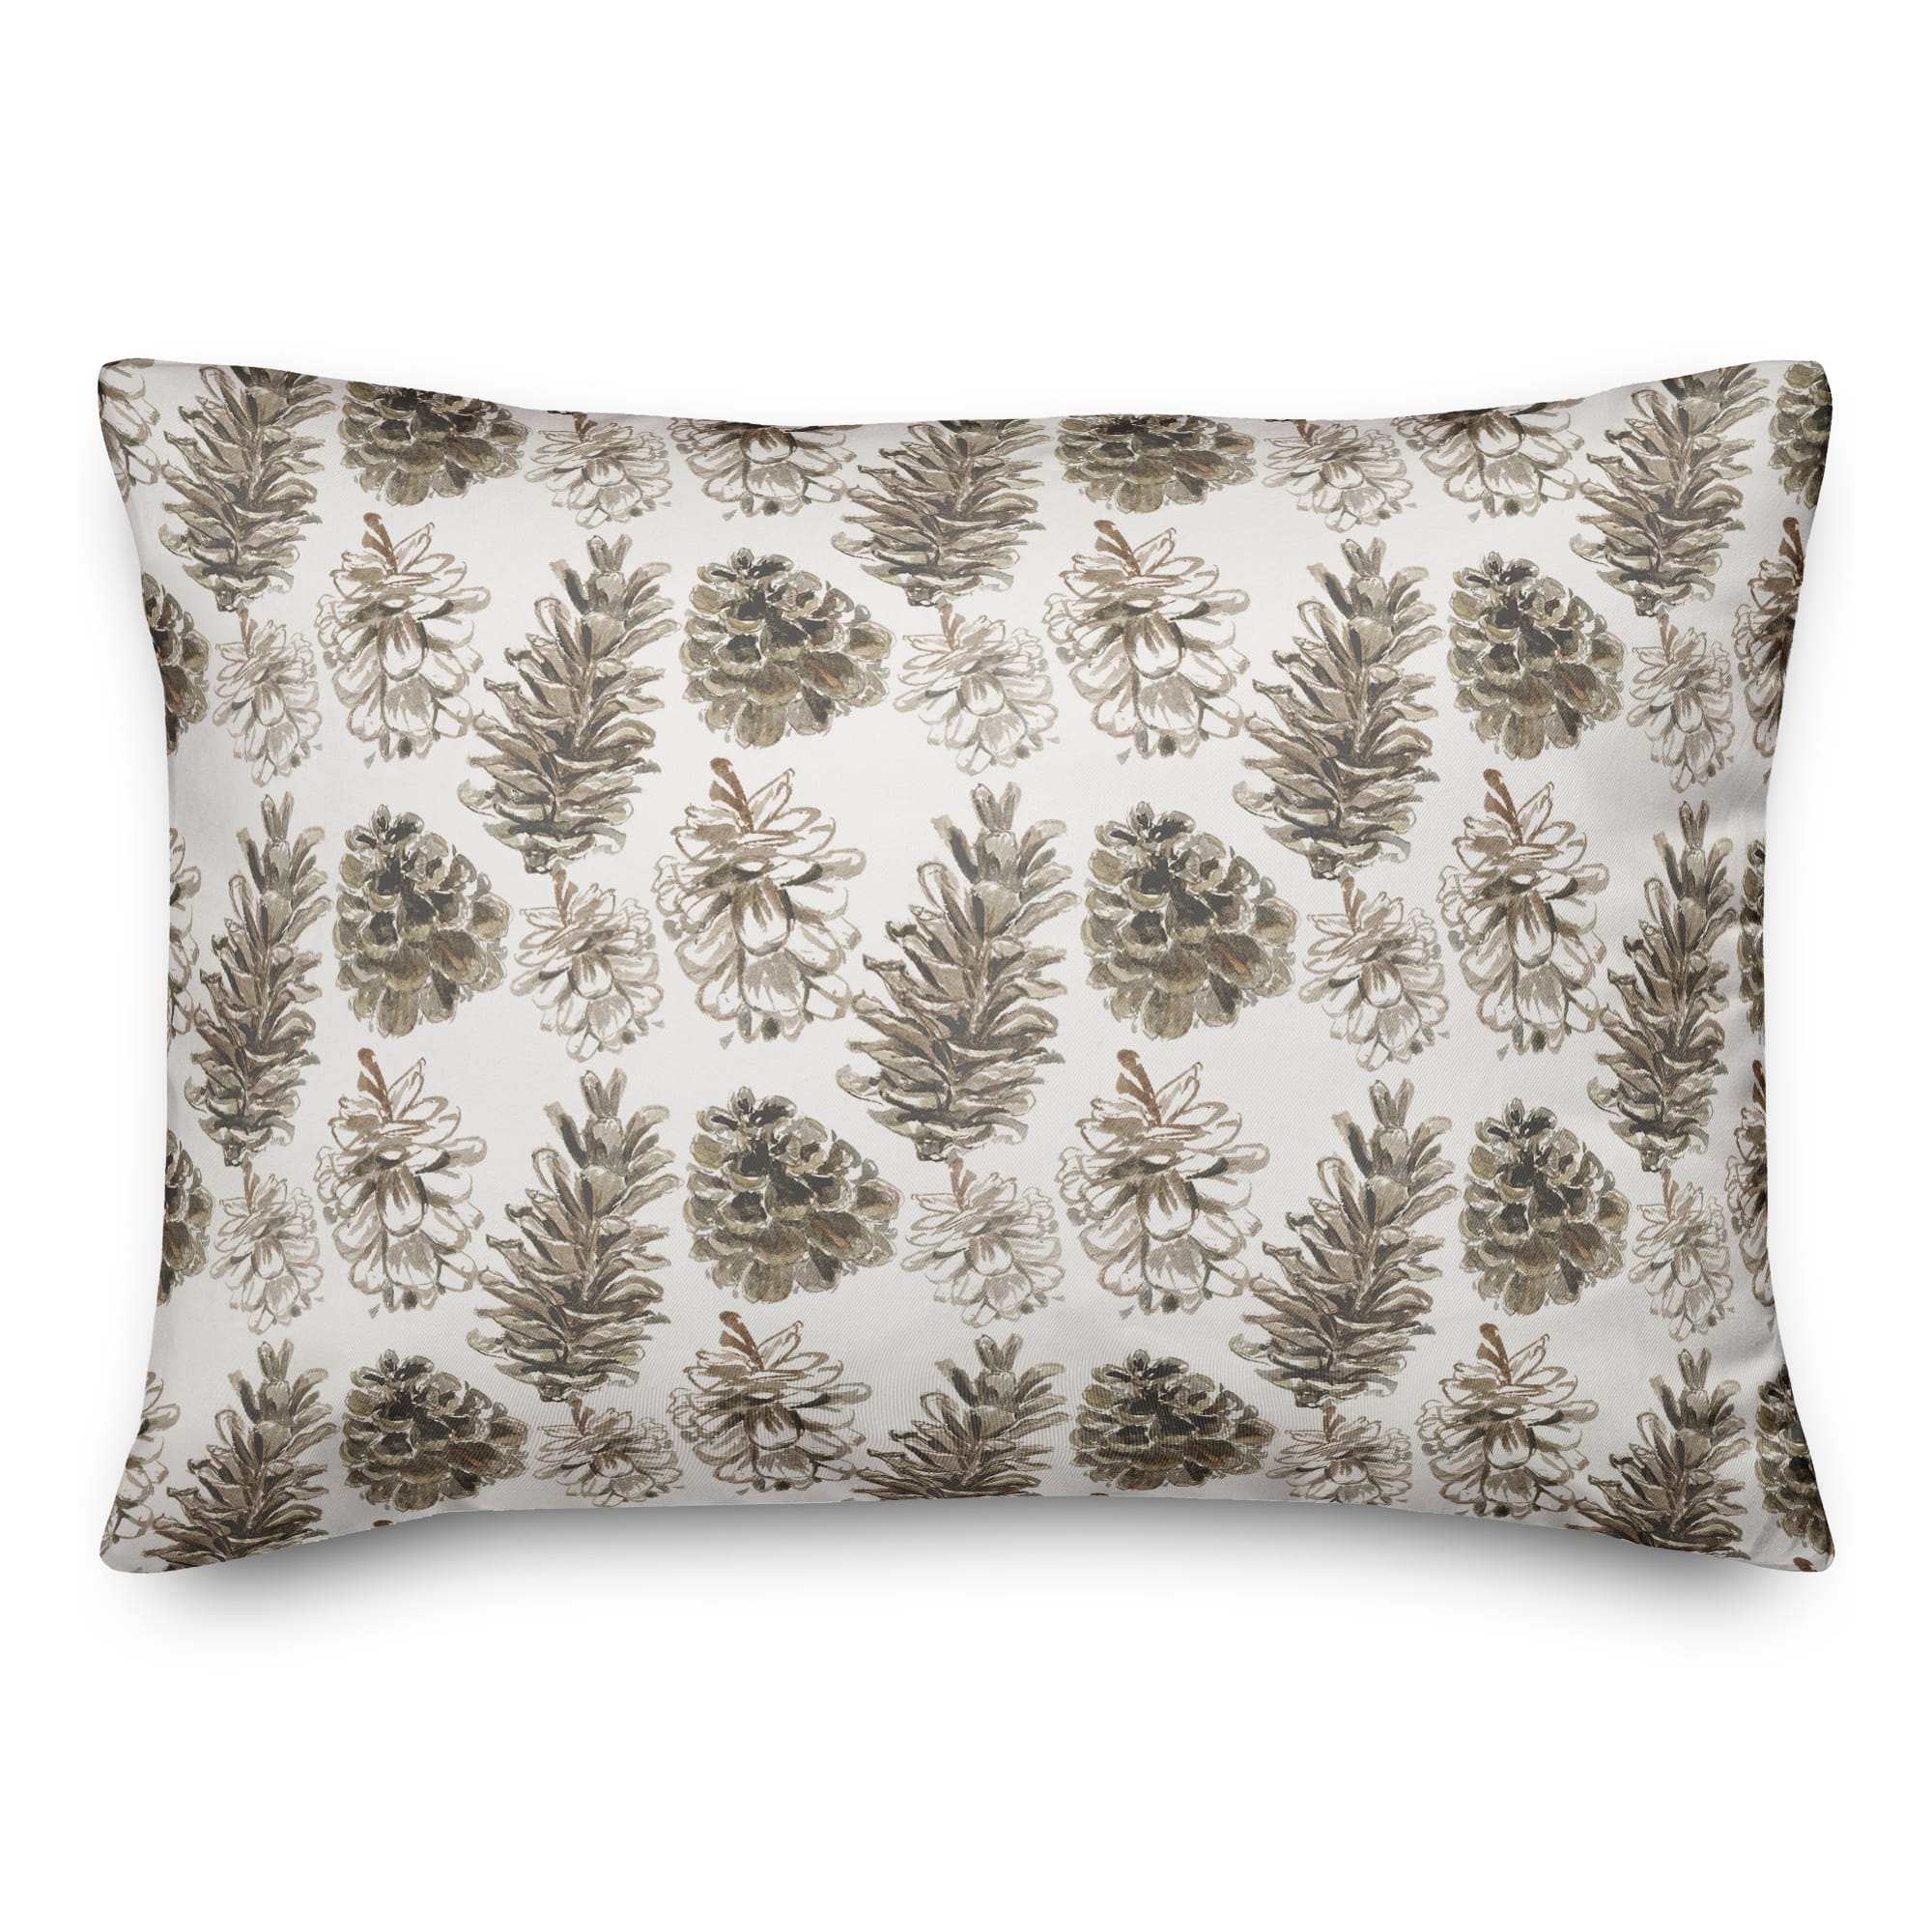 Pinecones on White Rectangle Throw Pillow